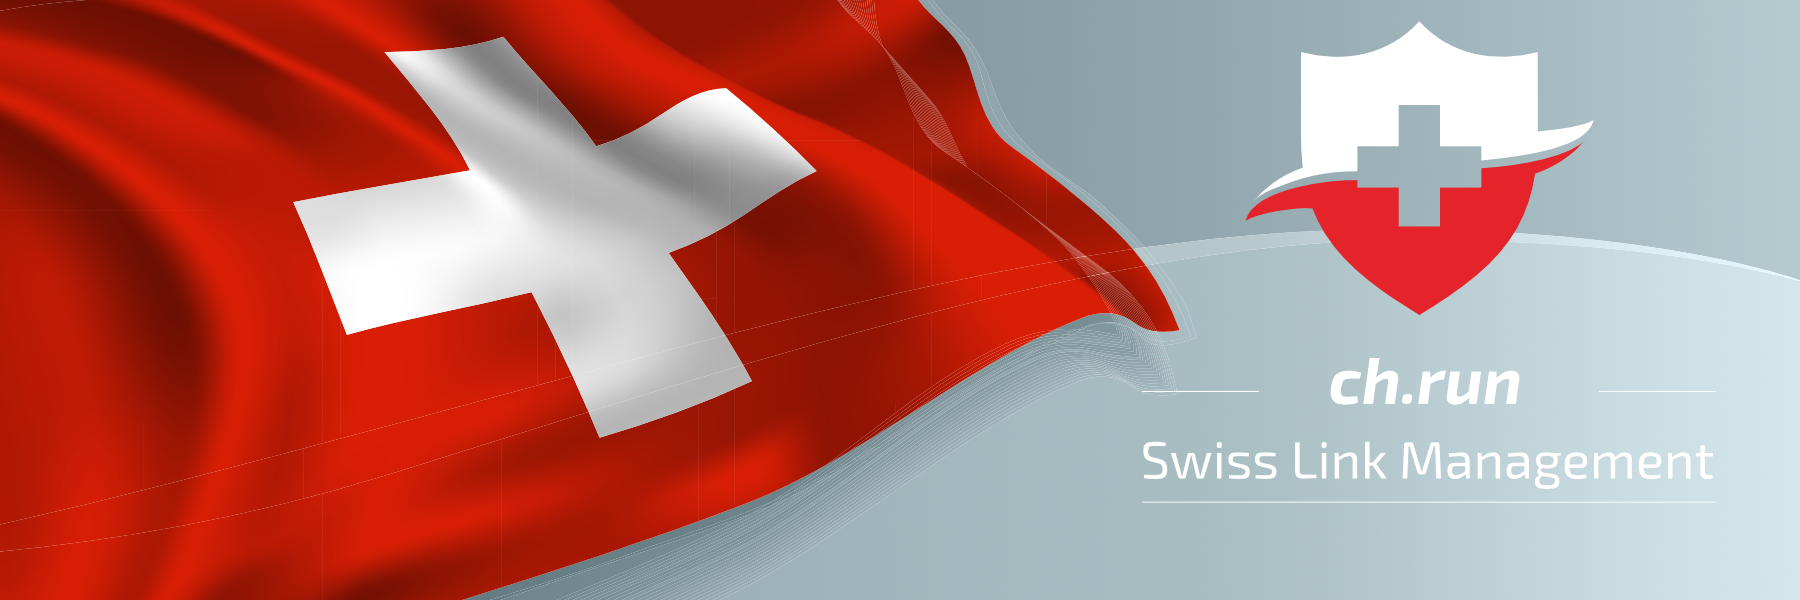 Swiss Link Management „ch.run“